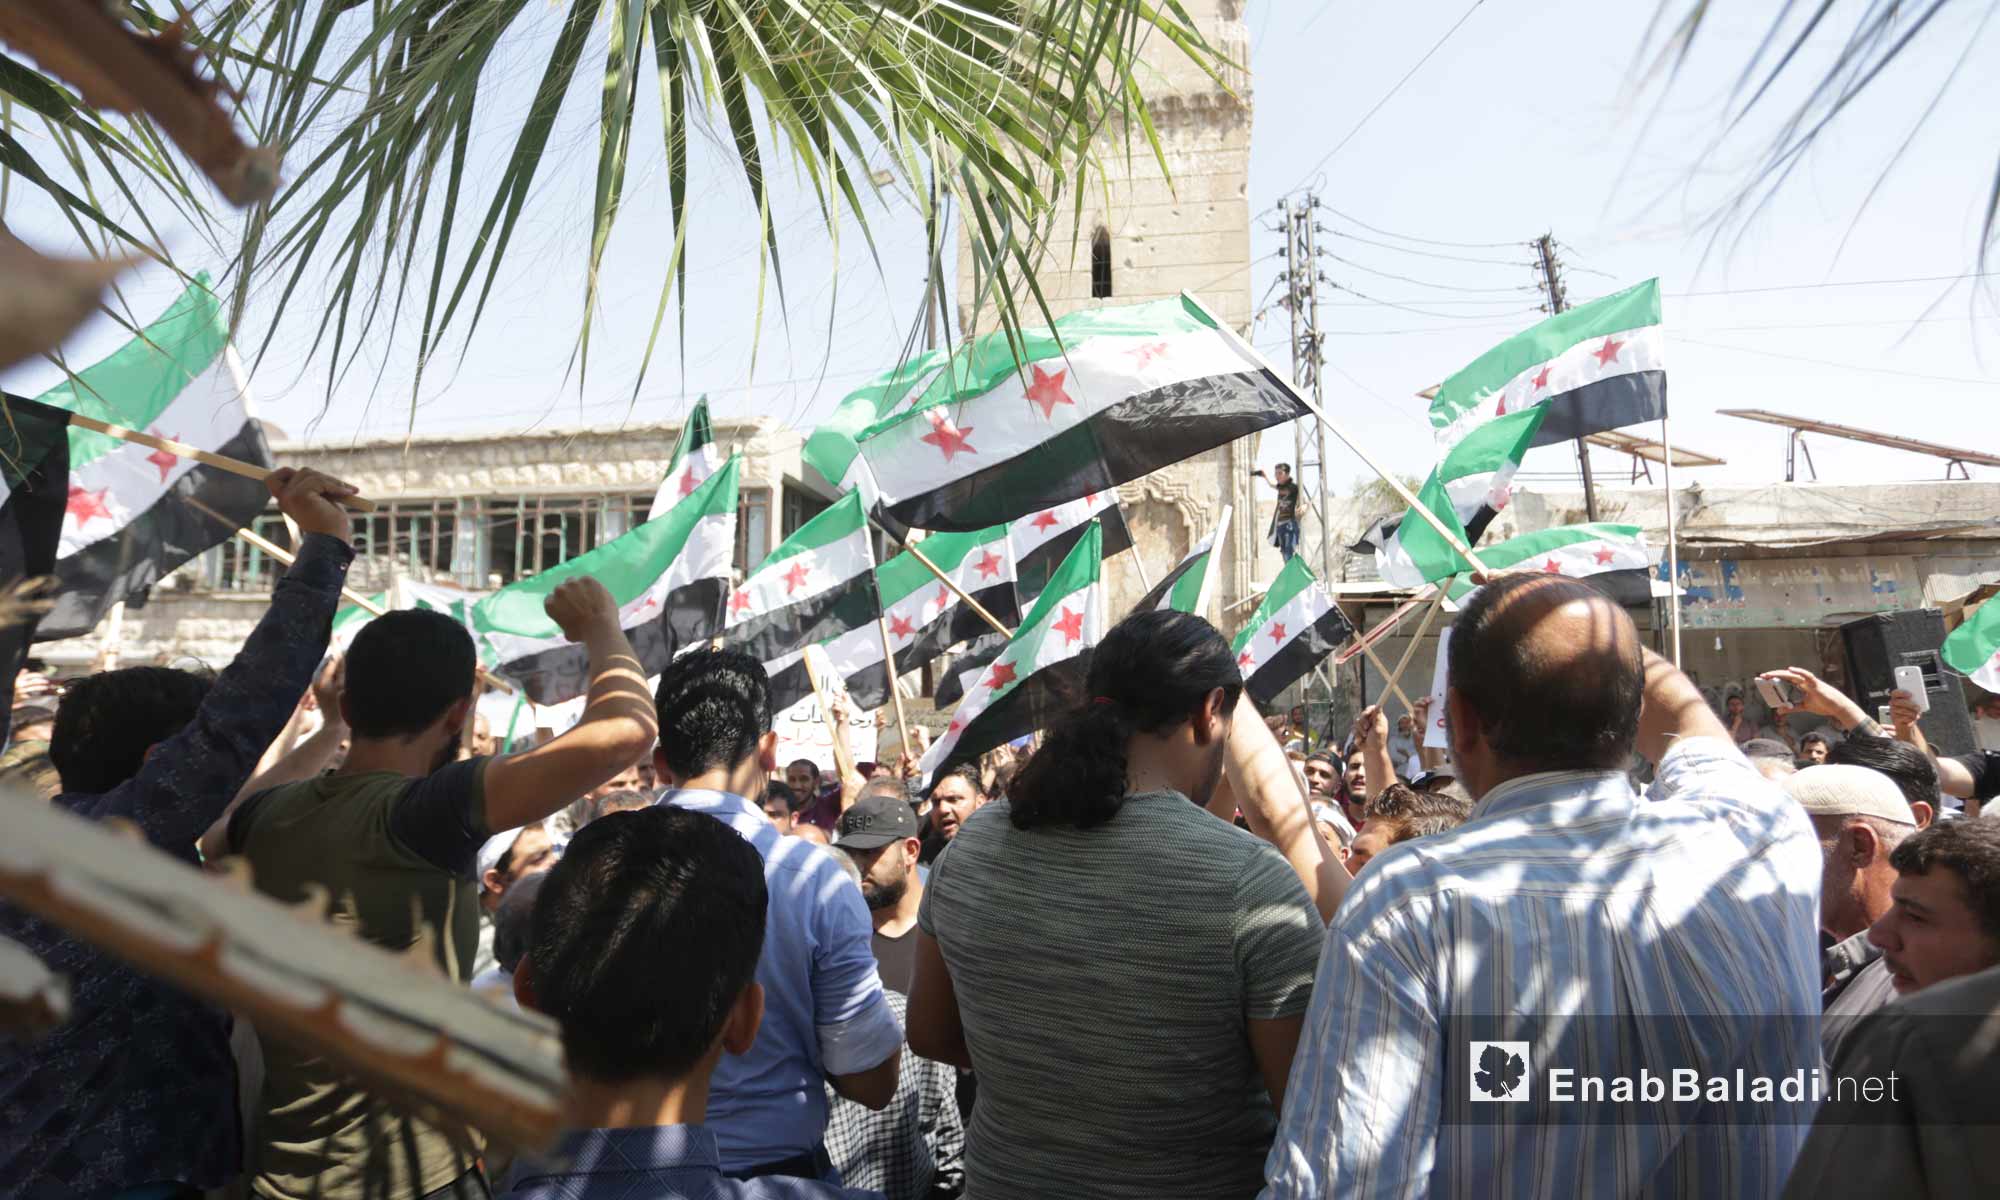 متظاهرون في معرة النعمان بريف إدلب يرفضون اتفاق سوتشي ويطالبون بإسقاط النظام السوري- 6 من أيلول 2019 (عنب بلدي)